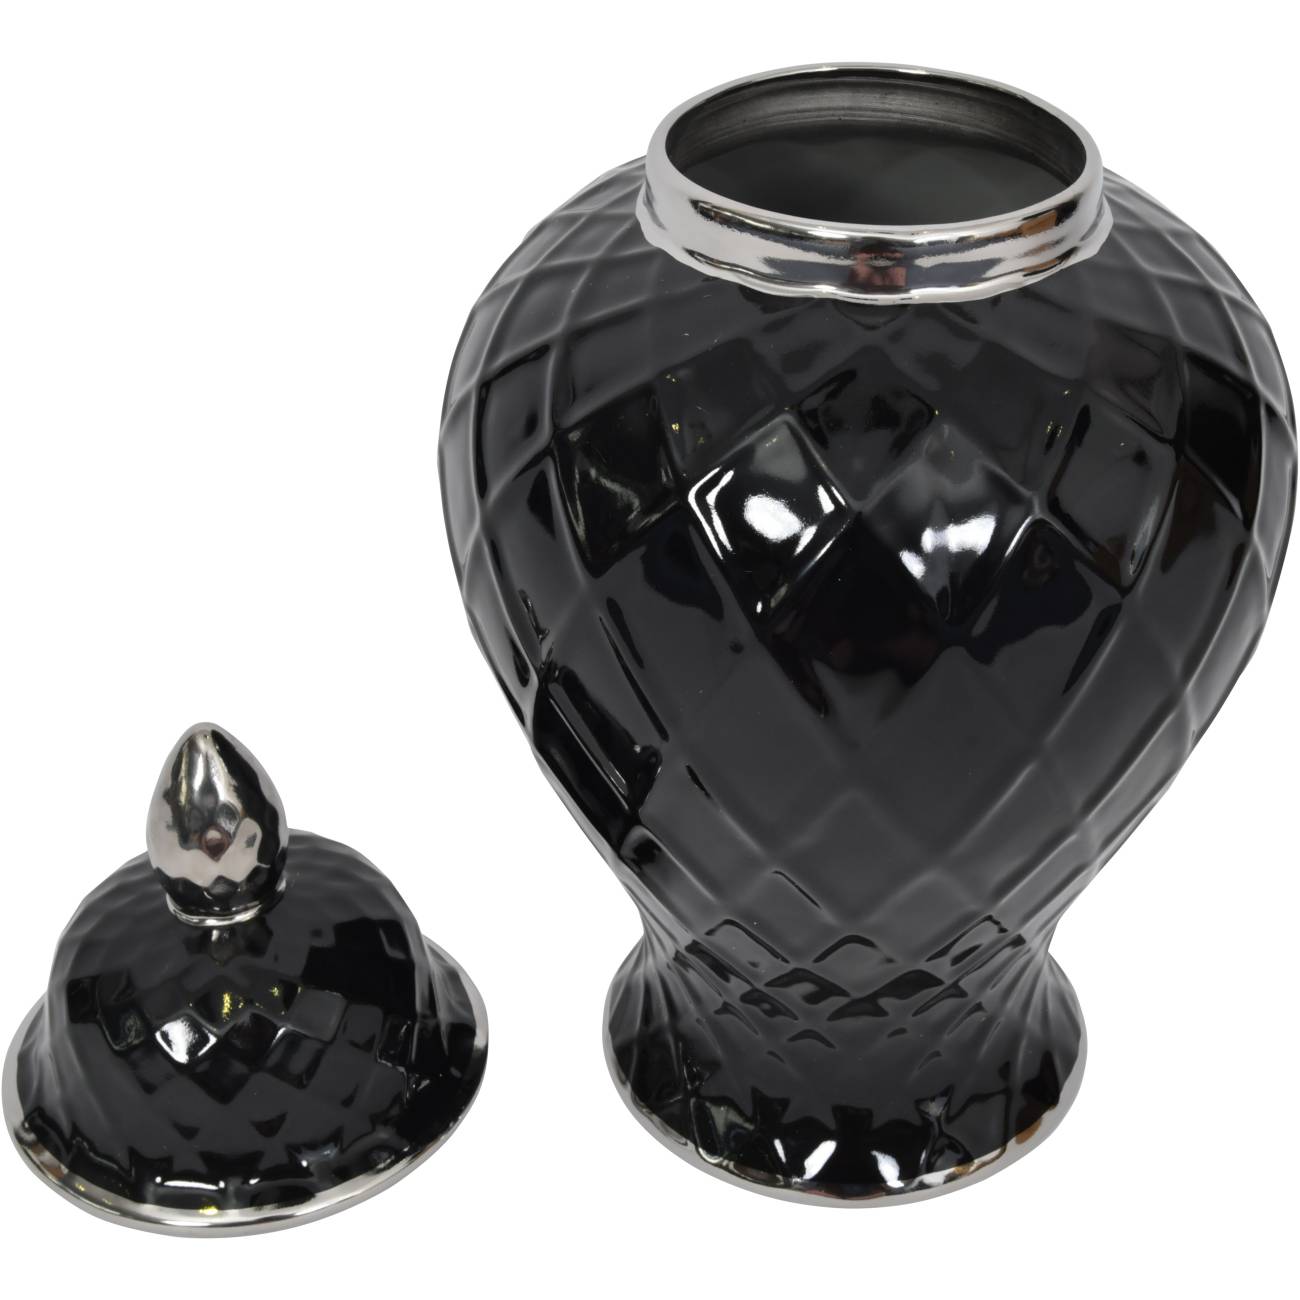 Mayfair Ceramic Jar